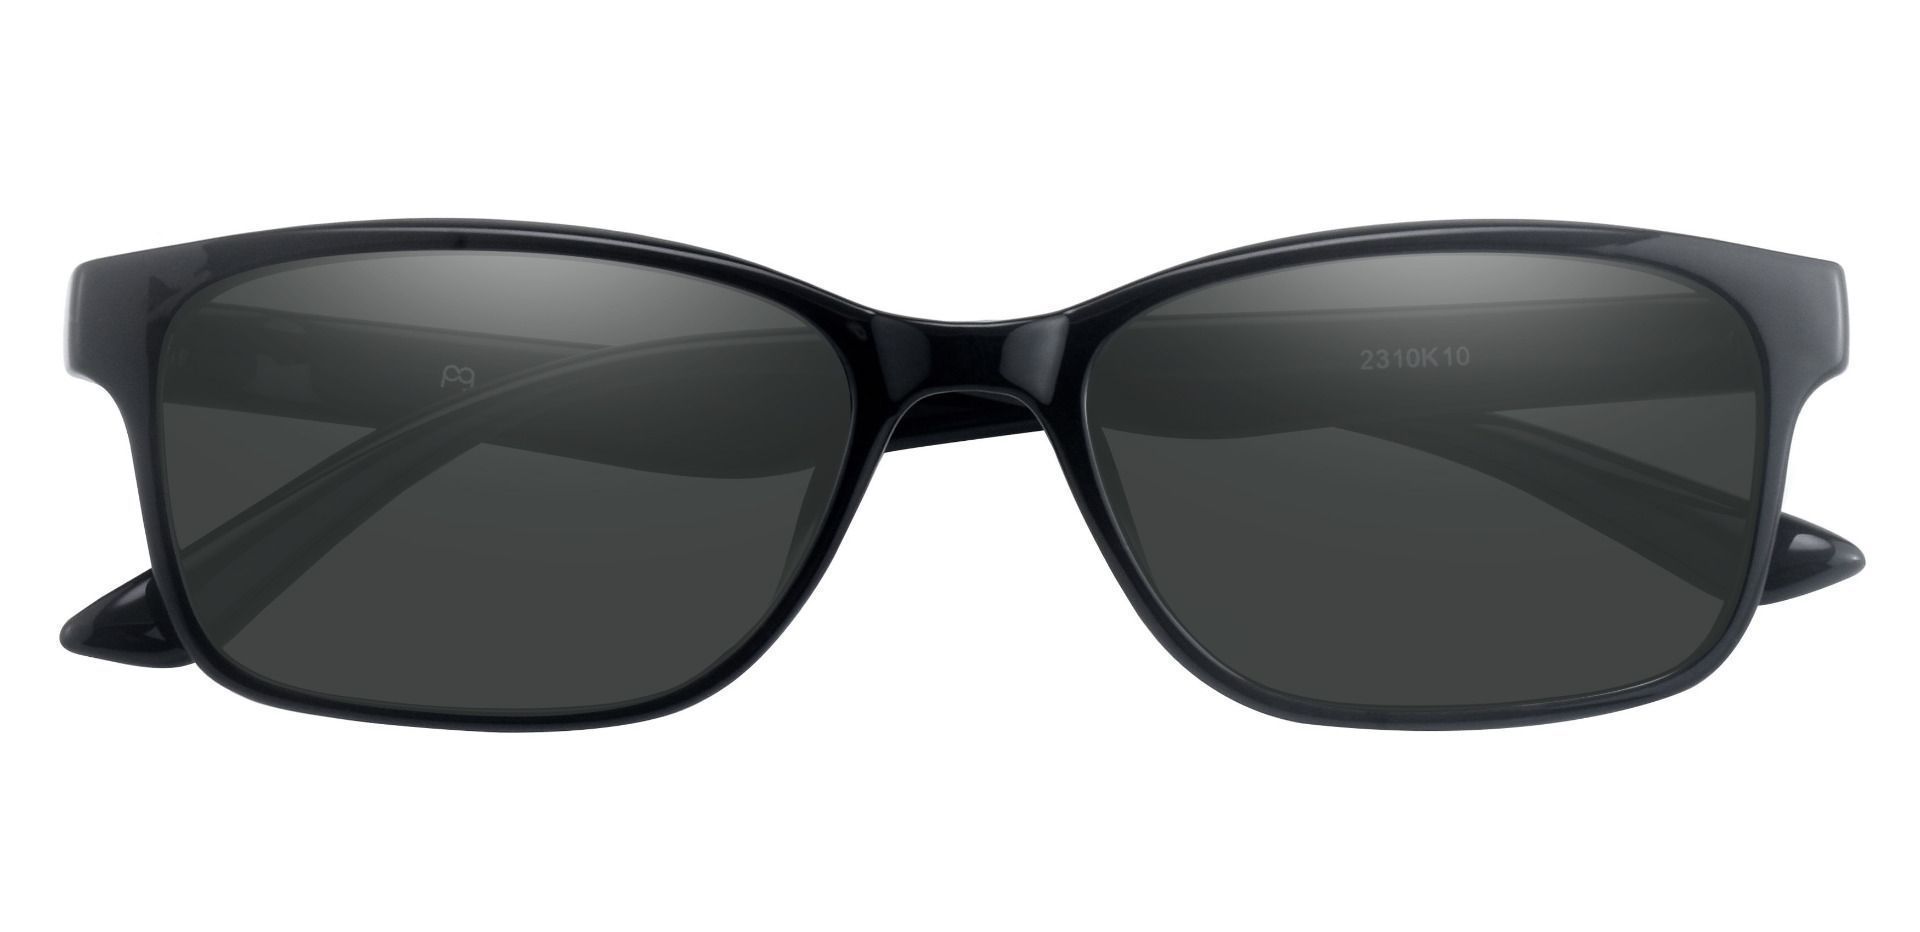 Osmond Rectangle Prescription Sunglasses - Black Frame With Gray Lenses